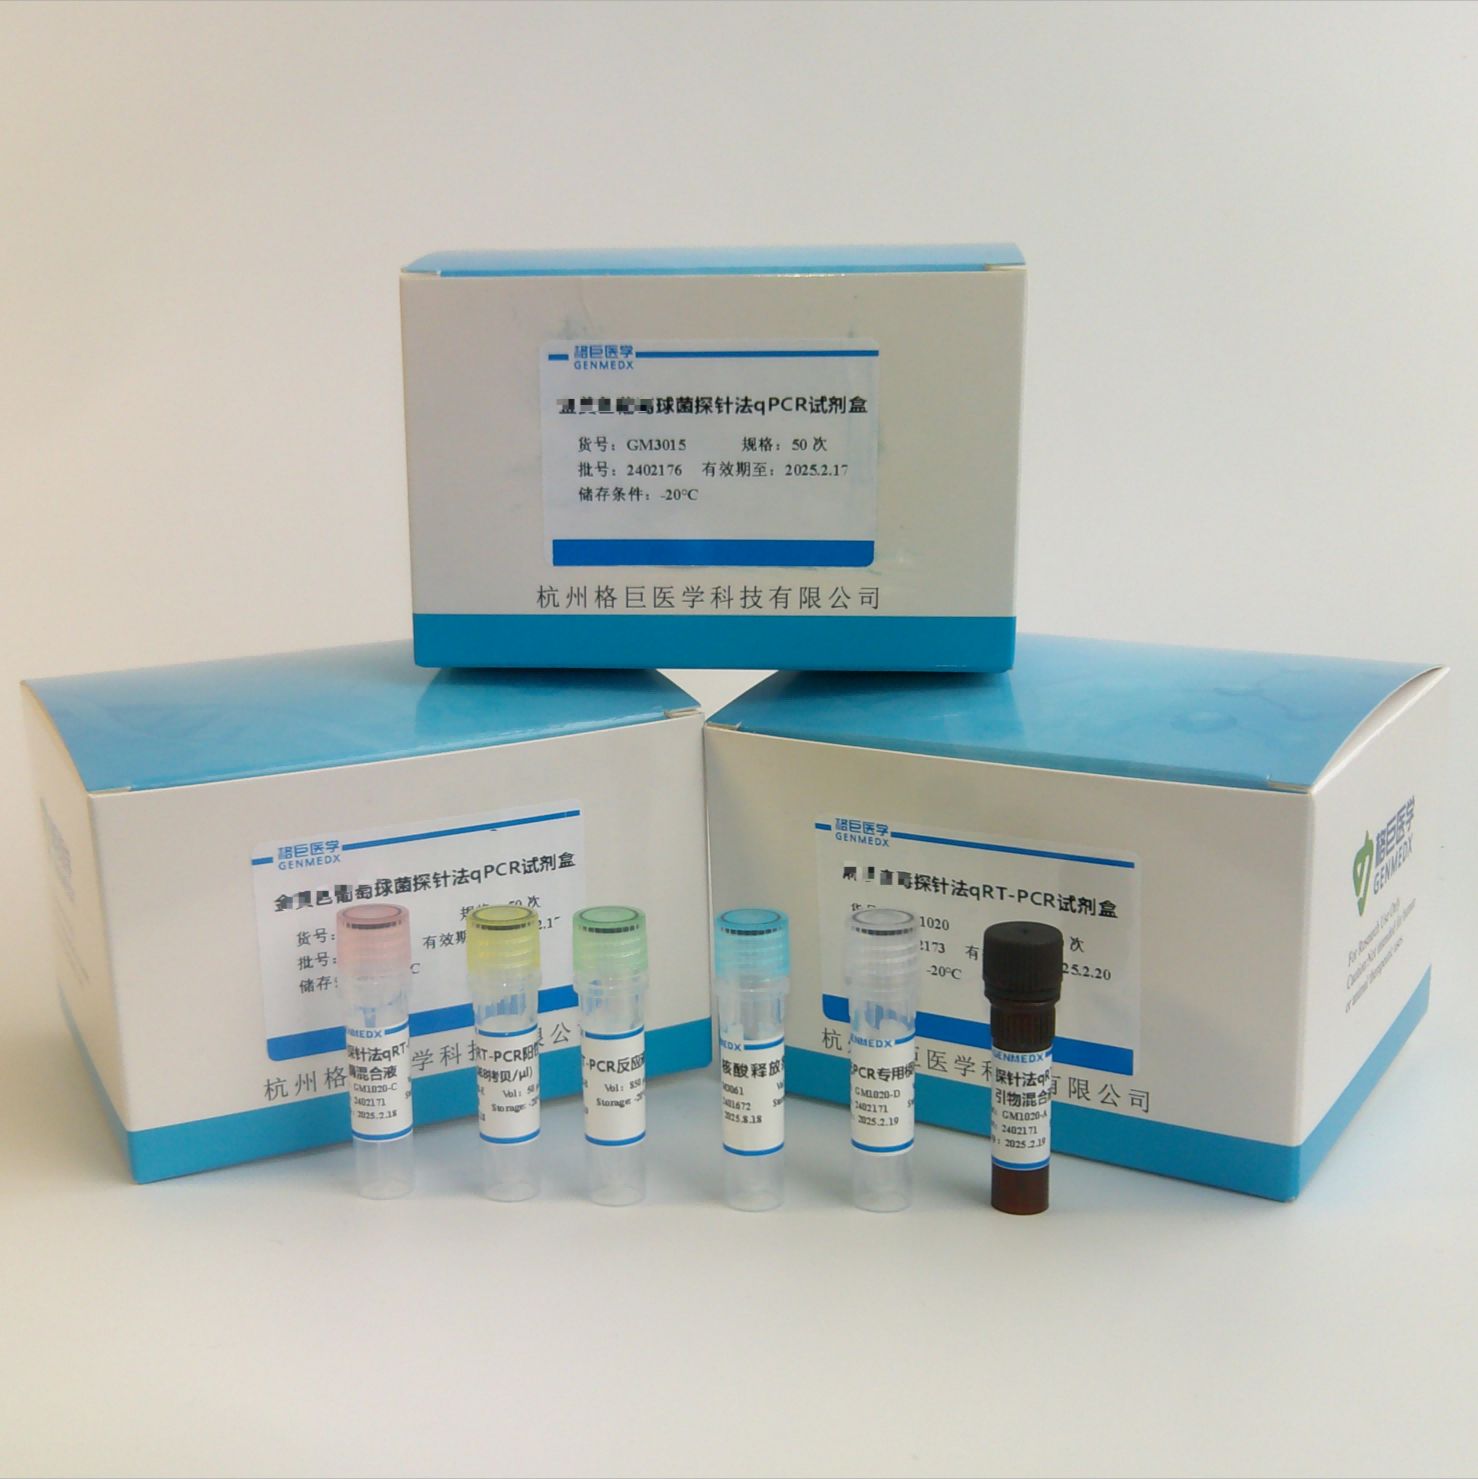 肠道病毒71型/柯萨奇病毒A16型/肠道病毒通用型三重荧光PCR试剂盒